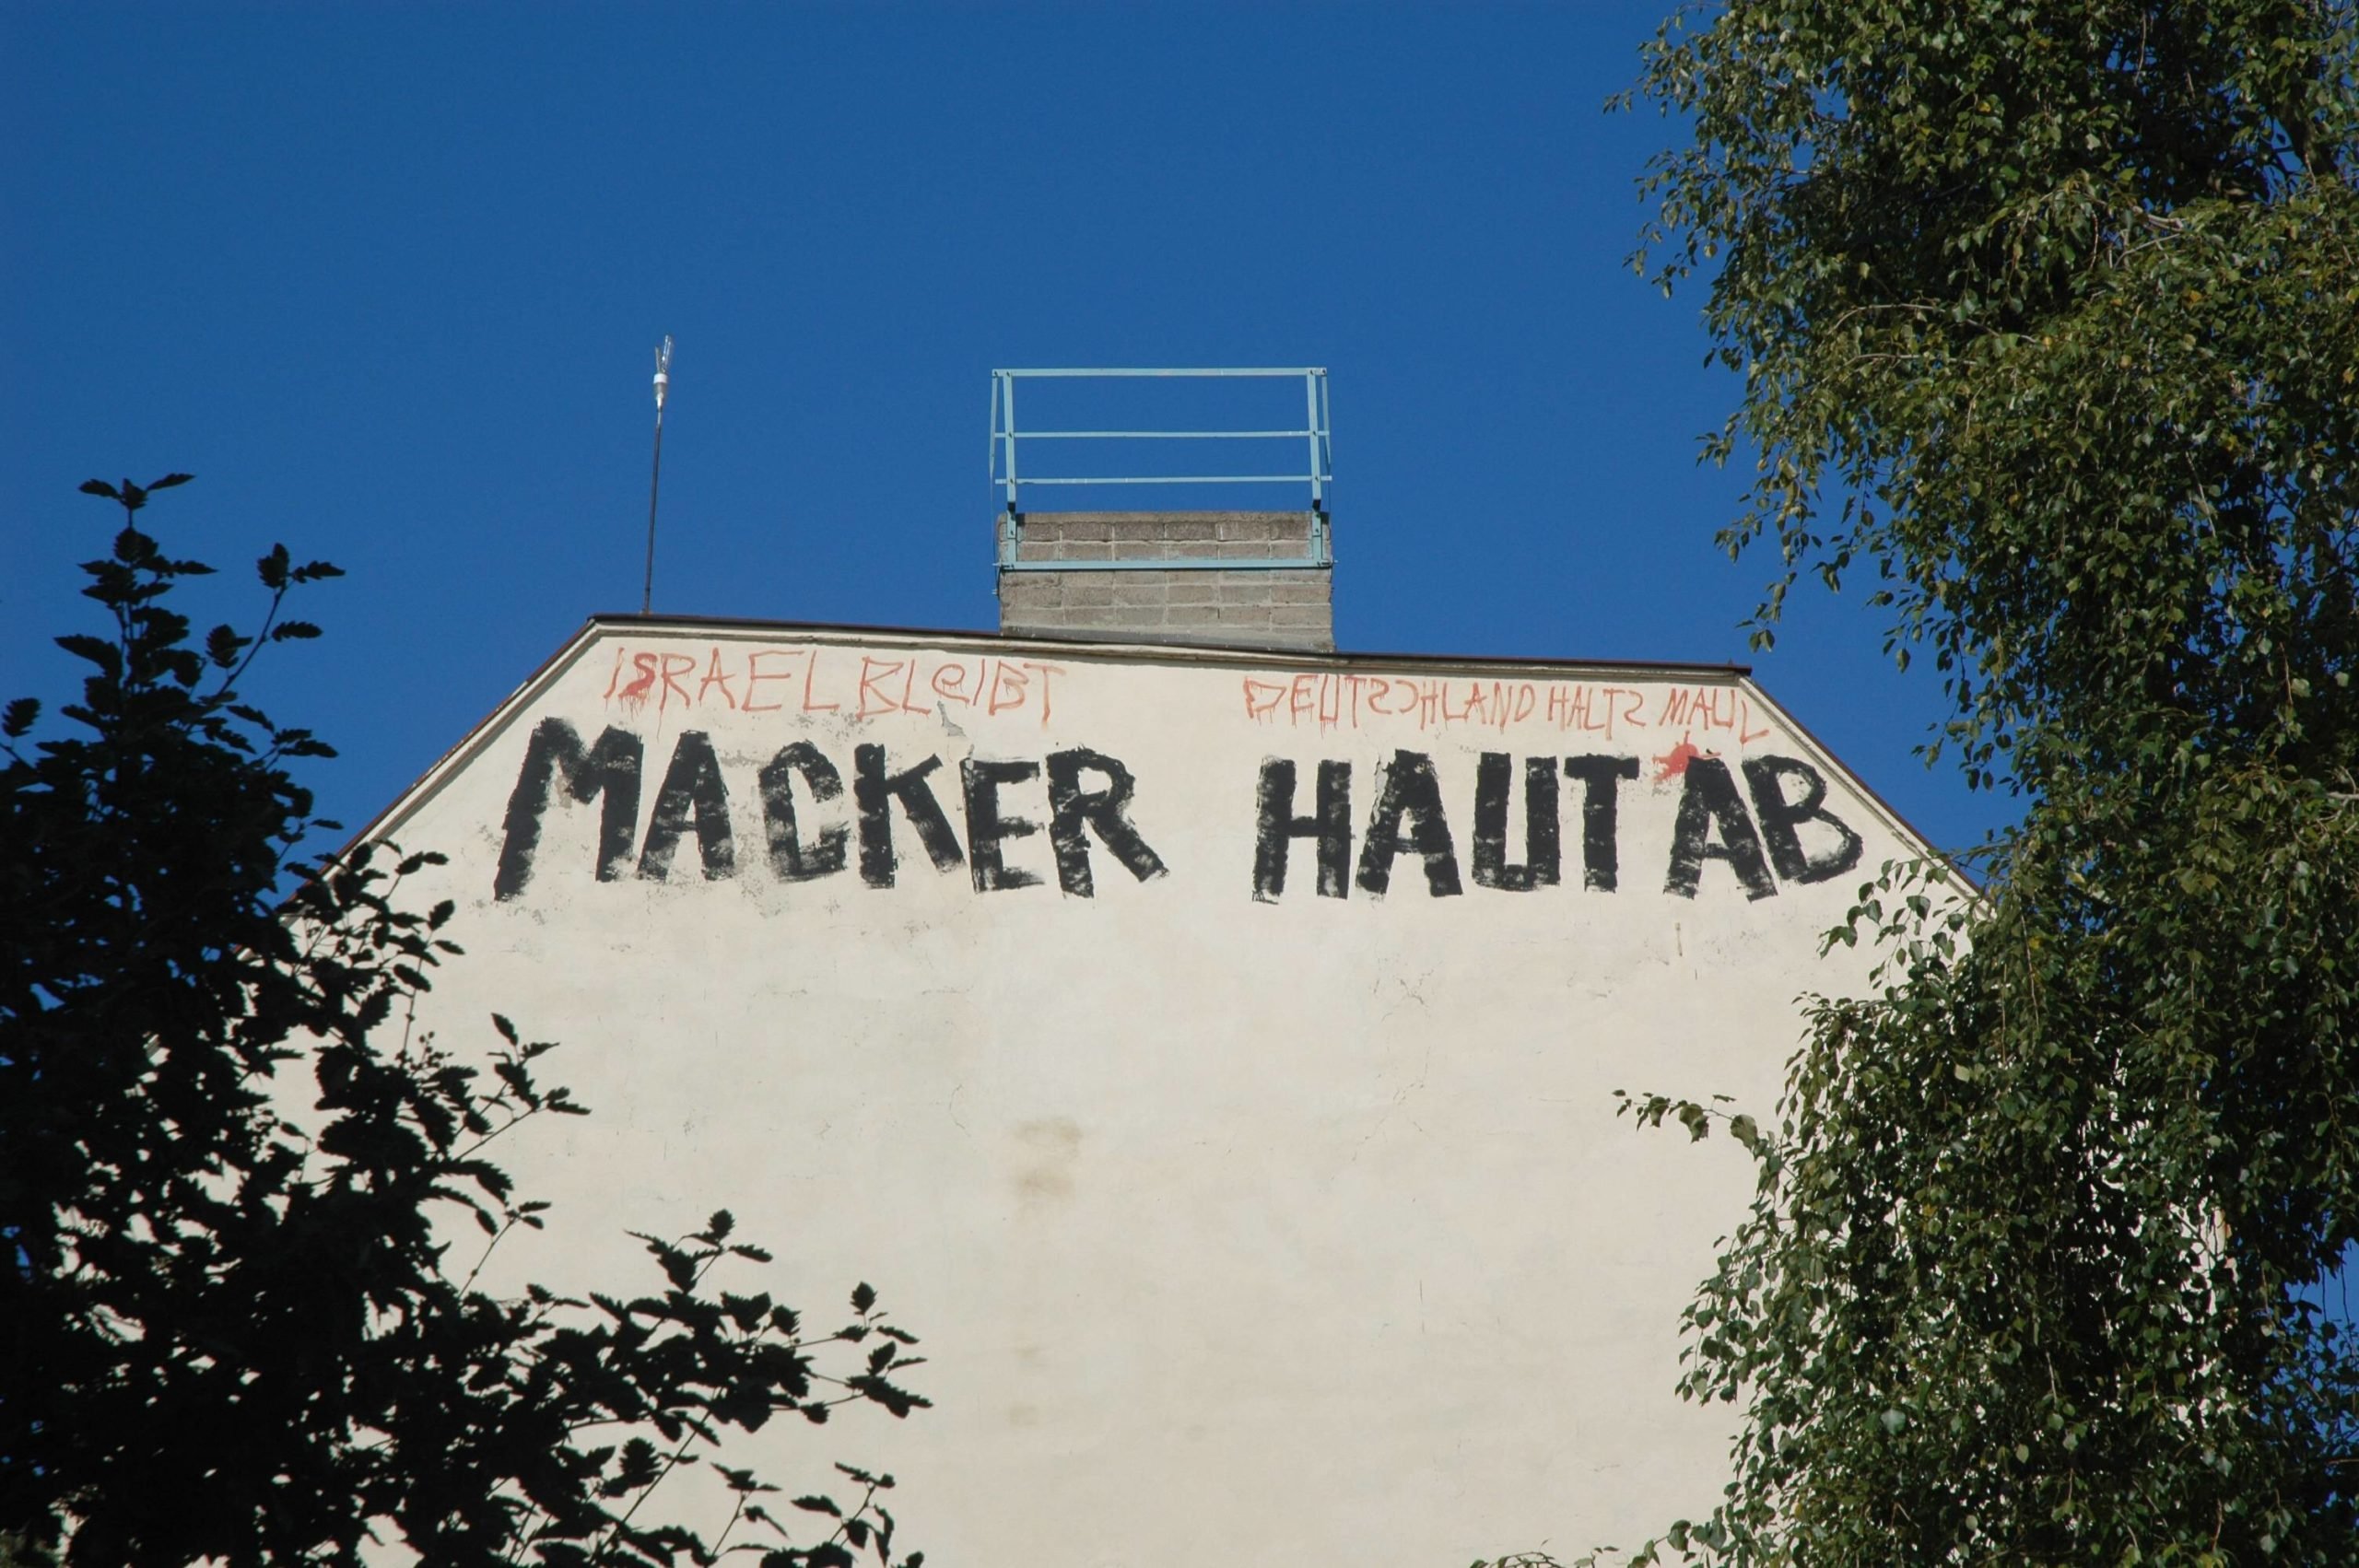 "Macker haut ab" – Parole an einer Brandwand in Friedrichshain. Foto: Imago/Steinach